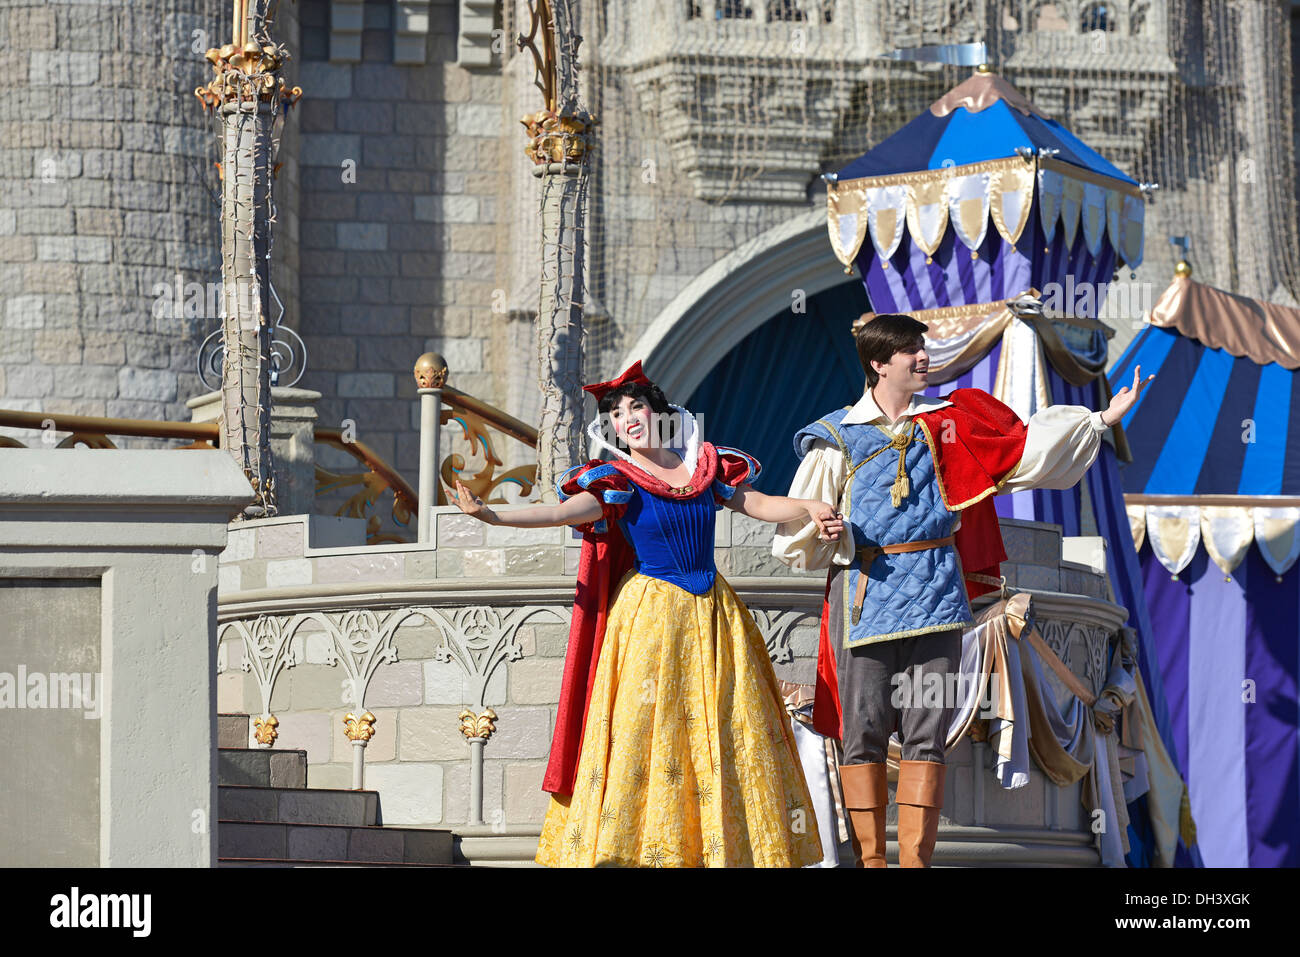 Blanche Neige et son Prince, sur la scène du rêve le long Show, Château de Cendrillon, Magic Kingdom, Disney World, Orlando, Floride Banque D'Images